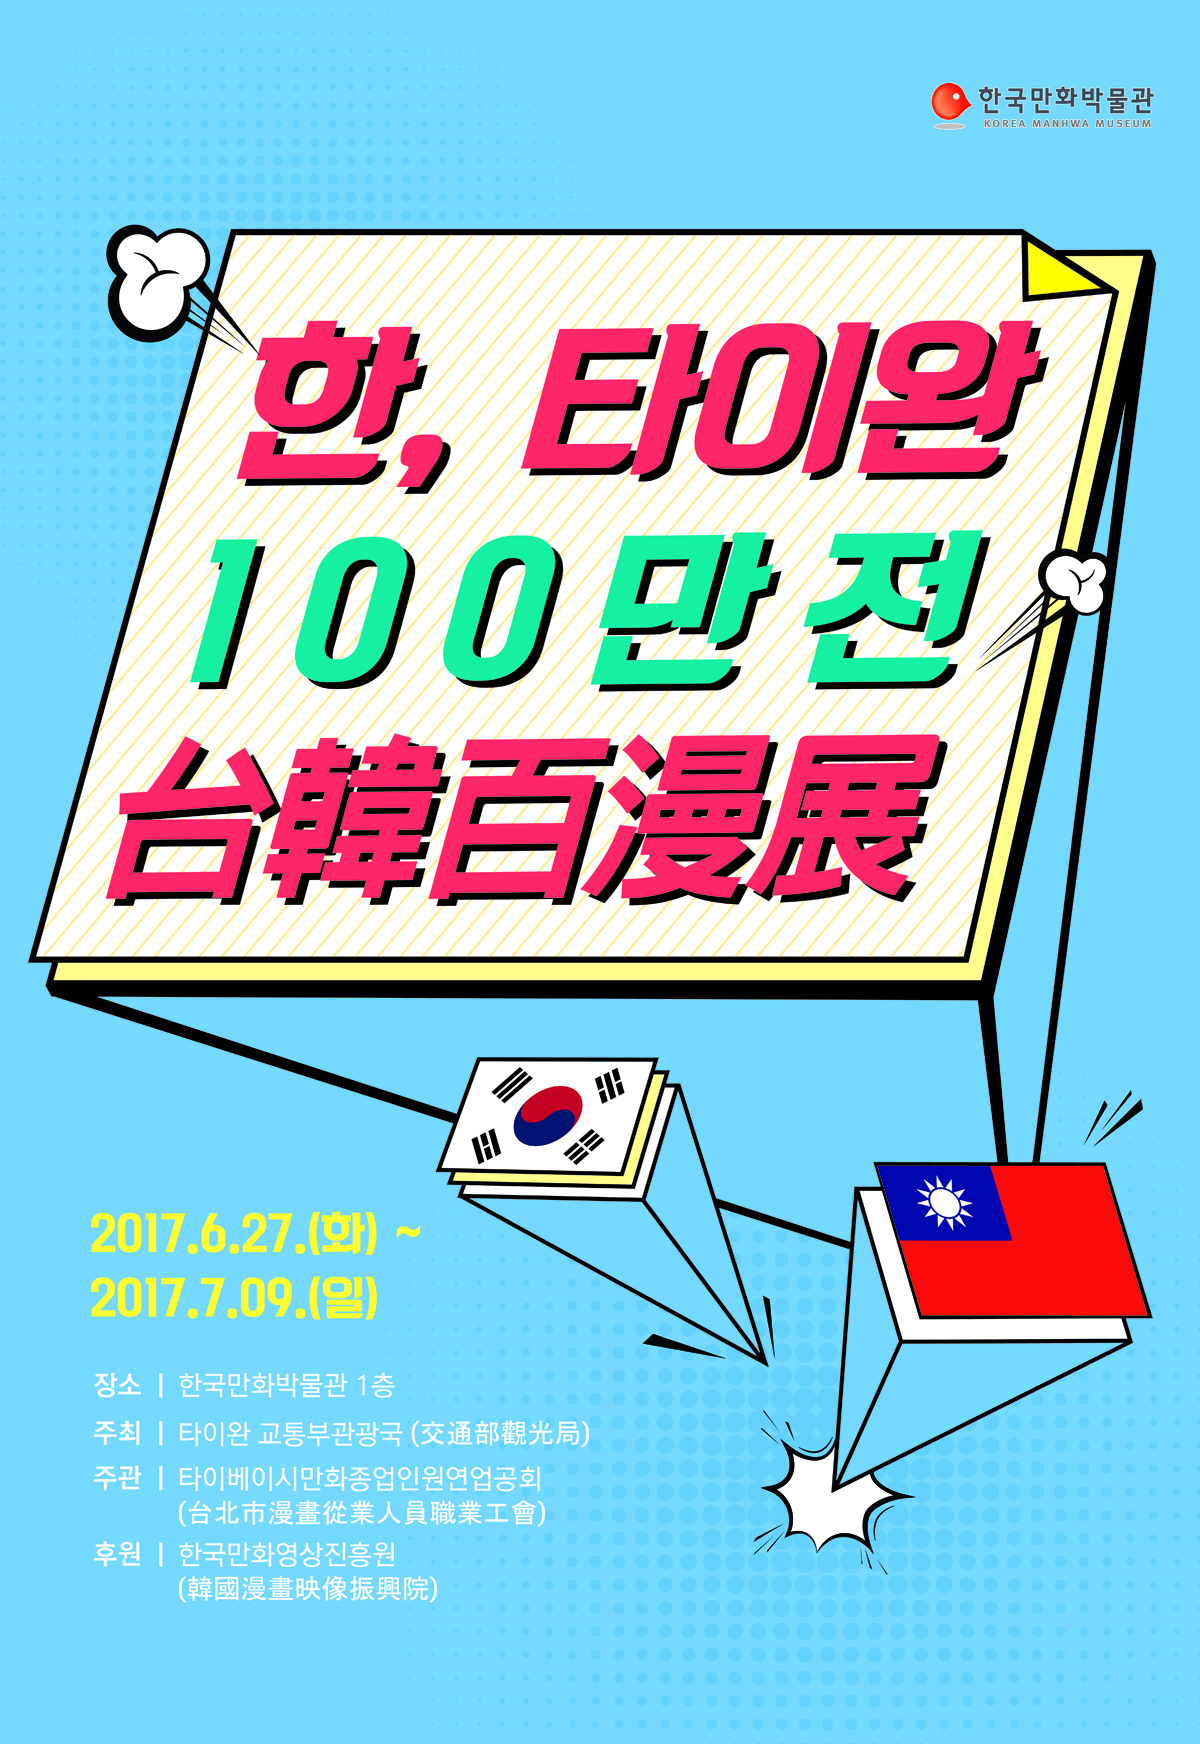 170621 [한국만화박물관] 한,타이완 100만전 포스터(최종) 파일보냄-01.jpg